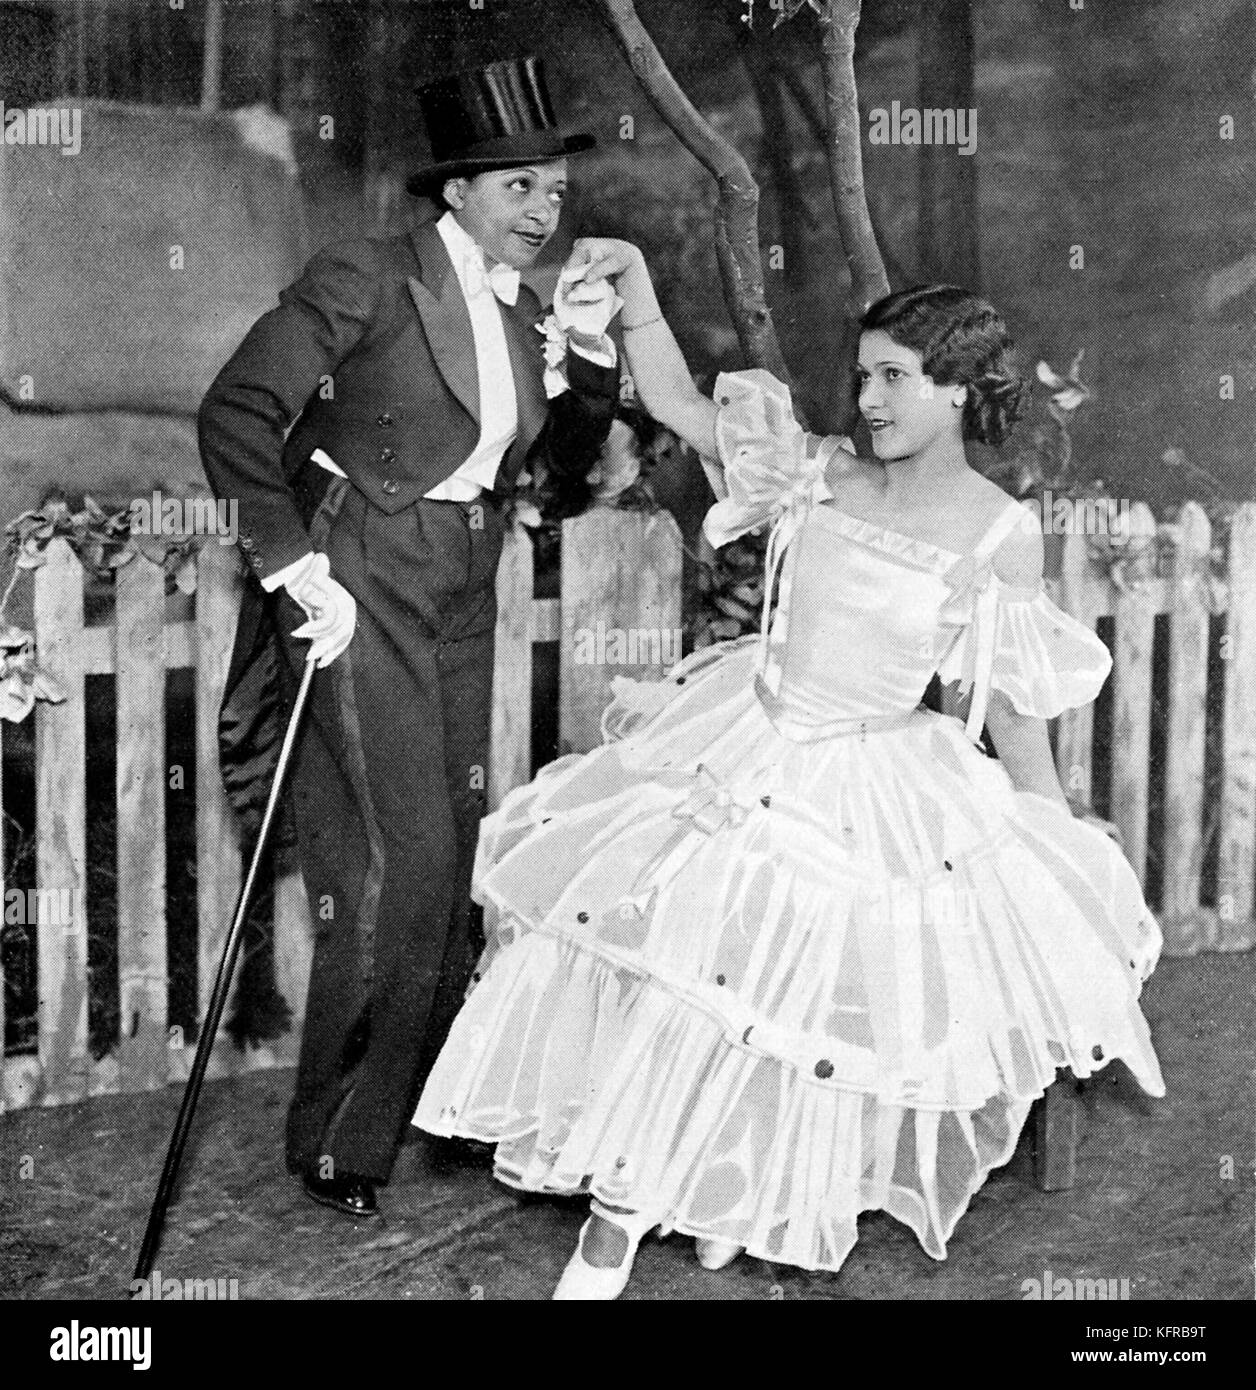 Valaida nieve (2 de junio de 1904 - 30 de mayo de 1956) y Dorothy verde, cantando "No te puedo dar nada sino amor', en Lew Leslie's 'Mirlos de 1935", en el London Coliseum, 1935. Foto de stock